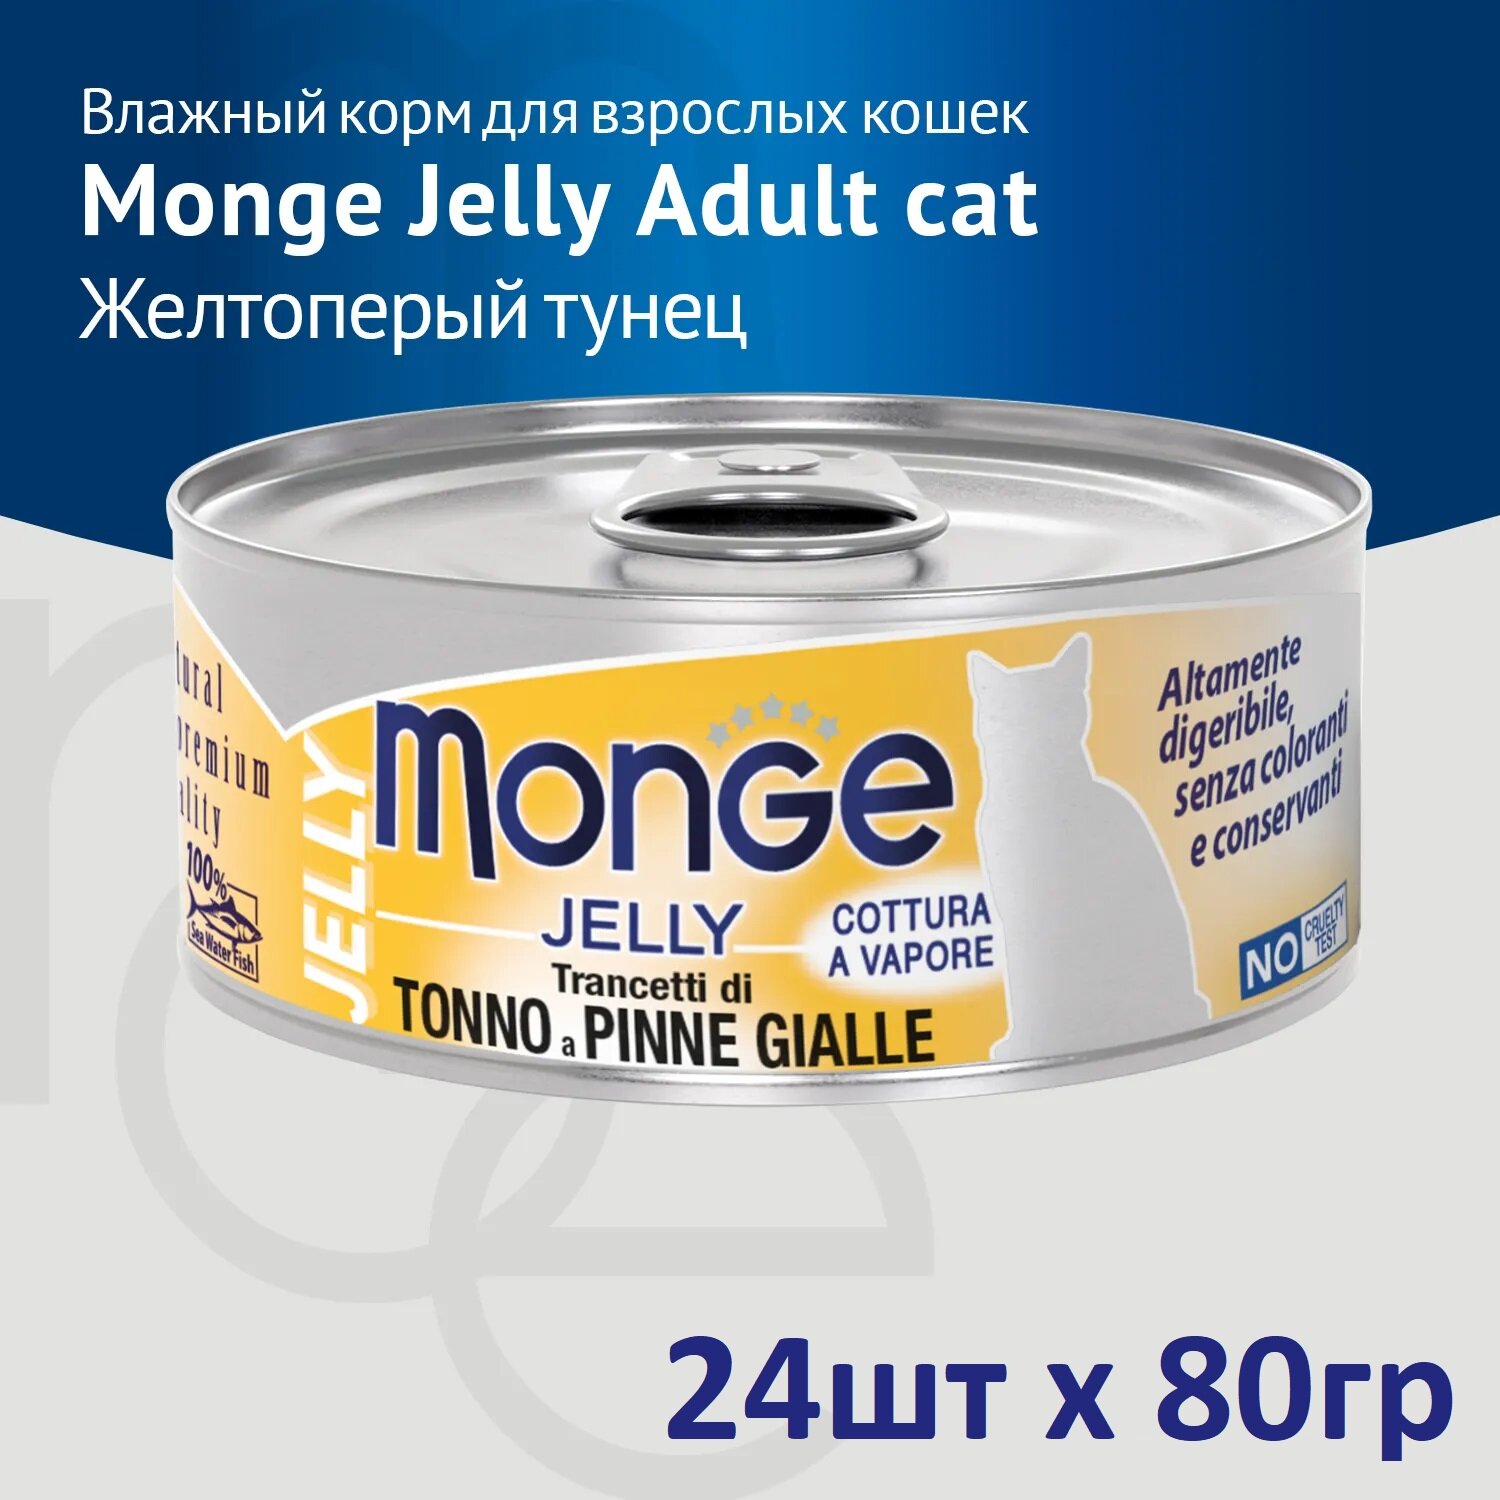 Monge Jelly Adult Cat влажный корм для взрослых кошек с желтоперым тунцом, в консервах - 80 г х 24 шт